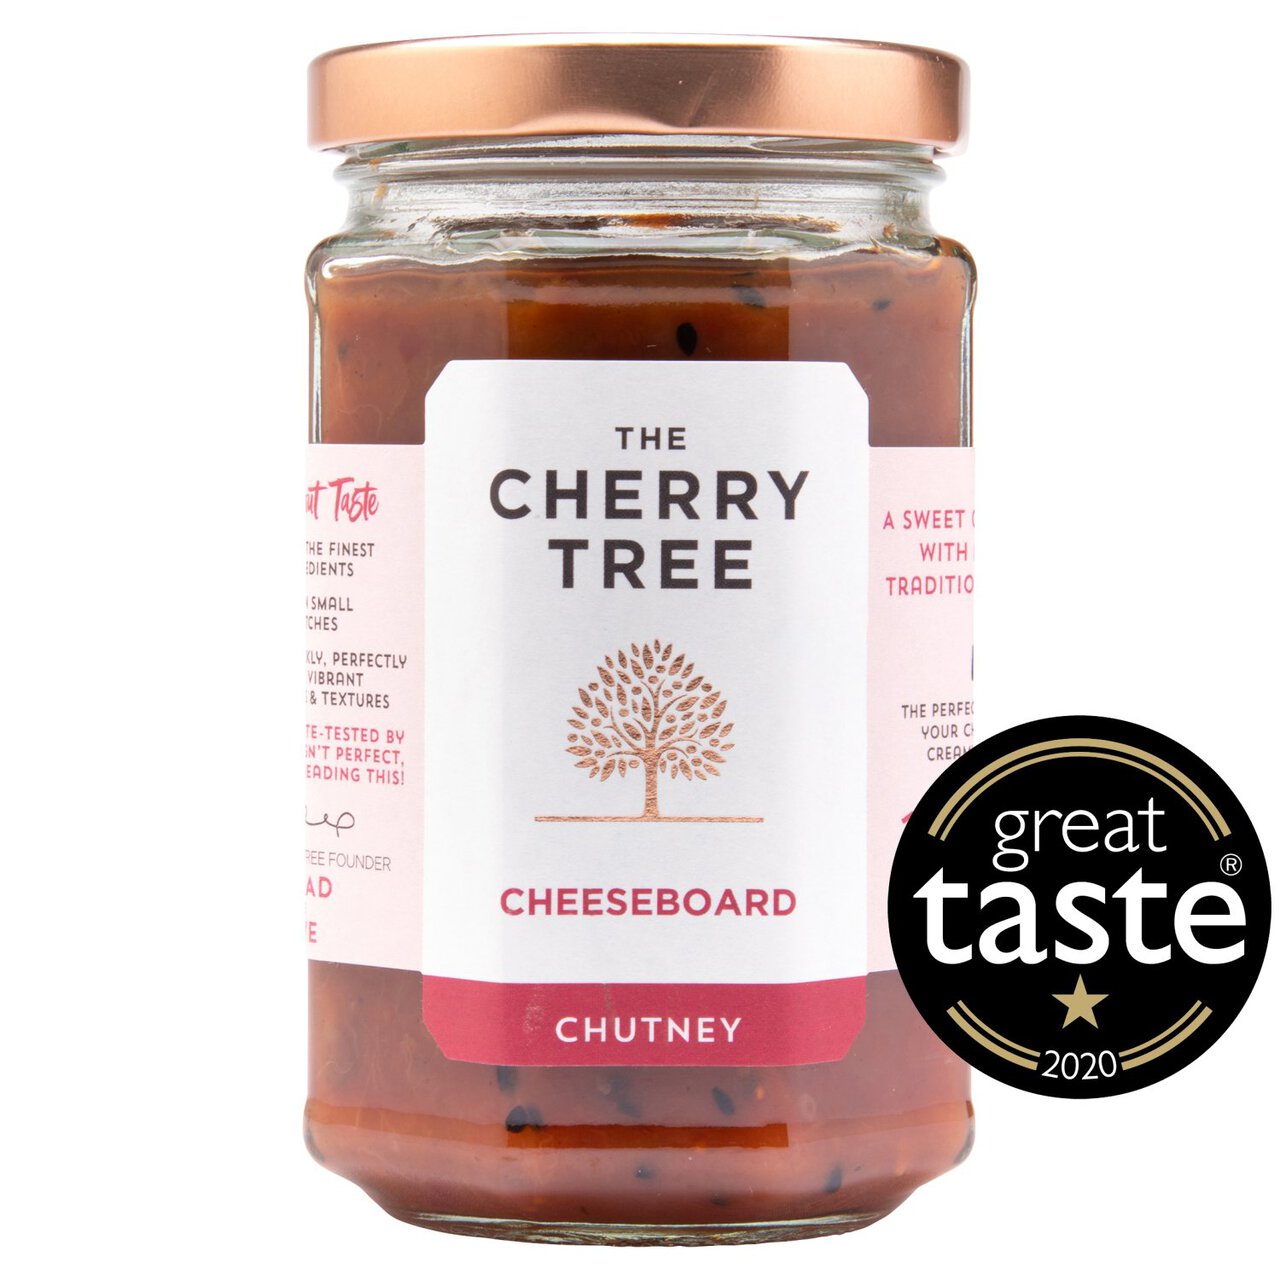 The Cherry Tree Cheeseboard Chutney 300g